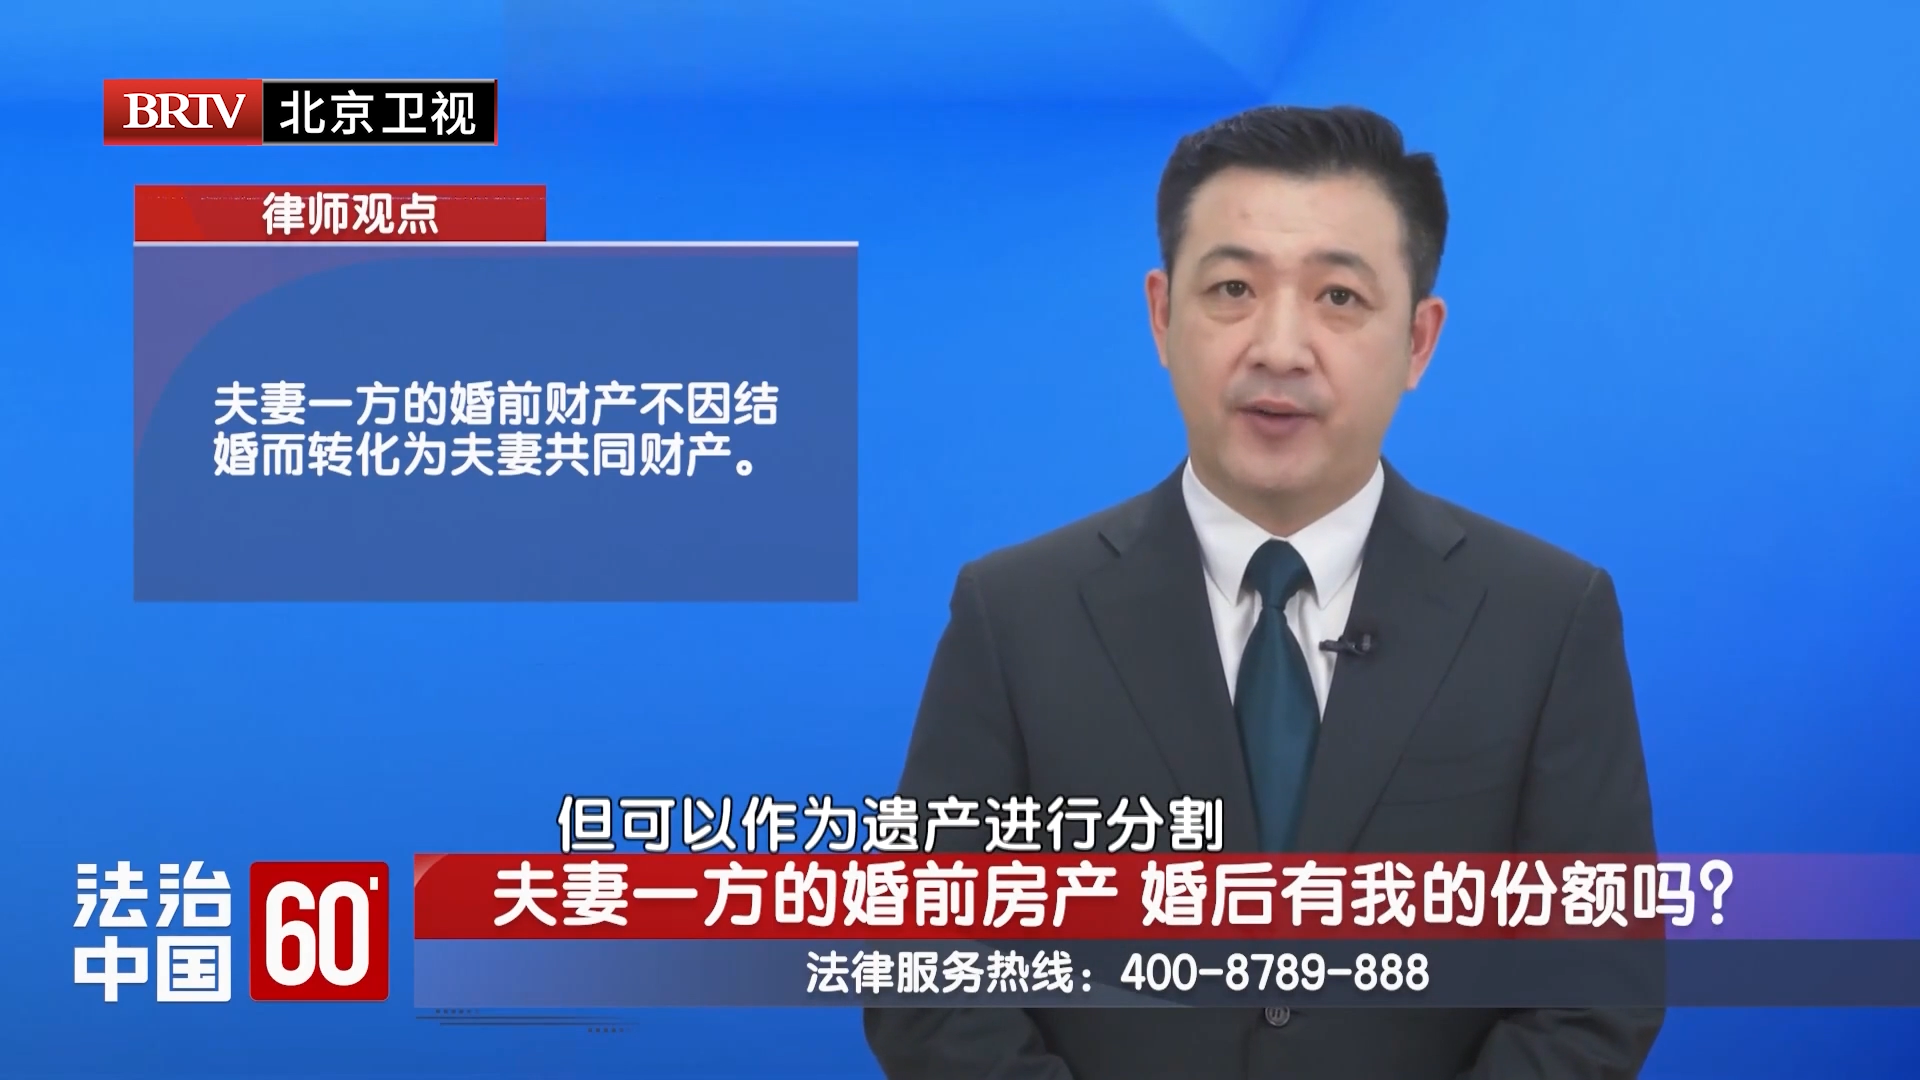 任战敏受邀参与录制的北京广播电视台《法治中国60′》节目播出